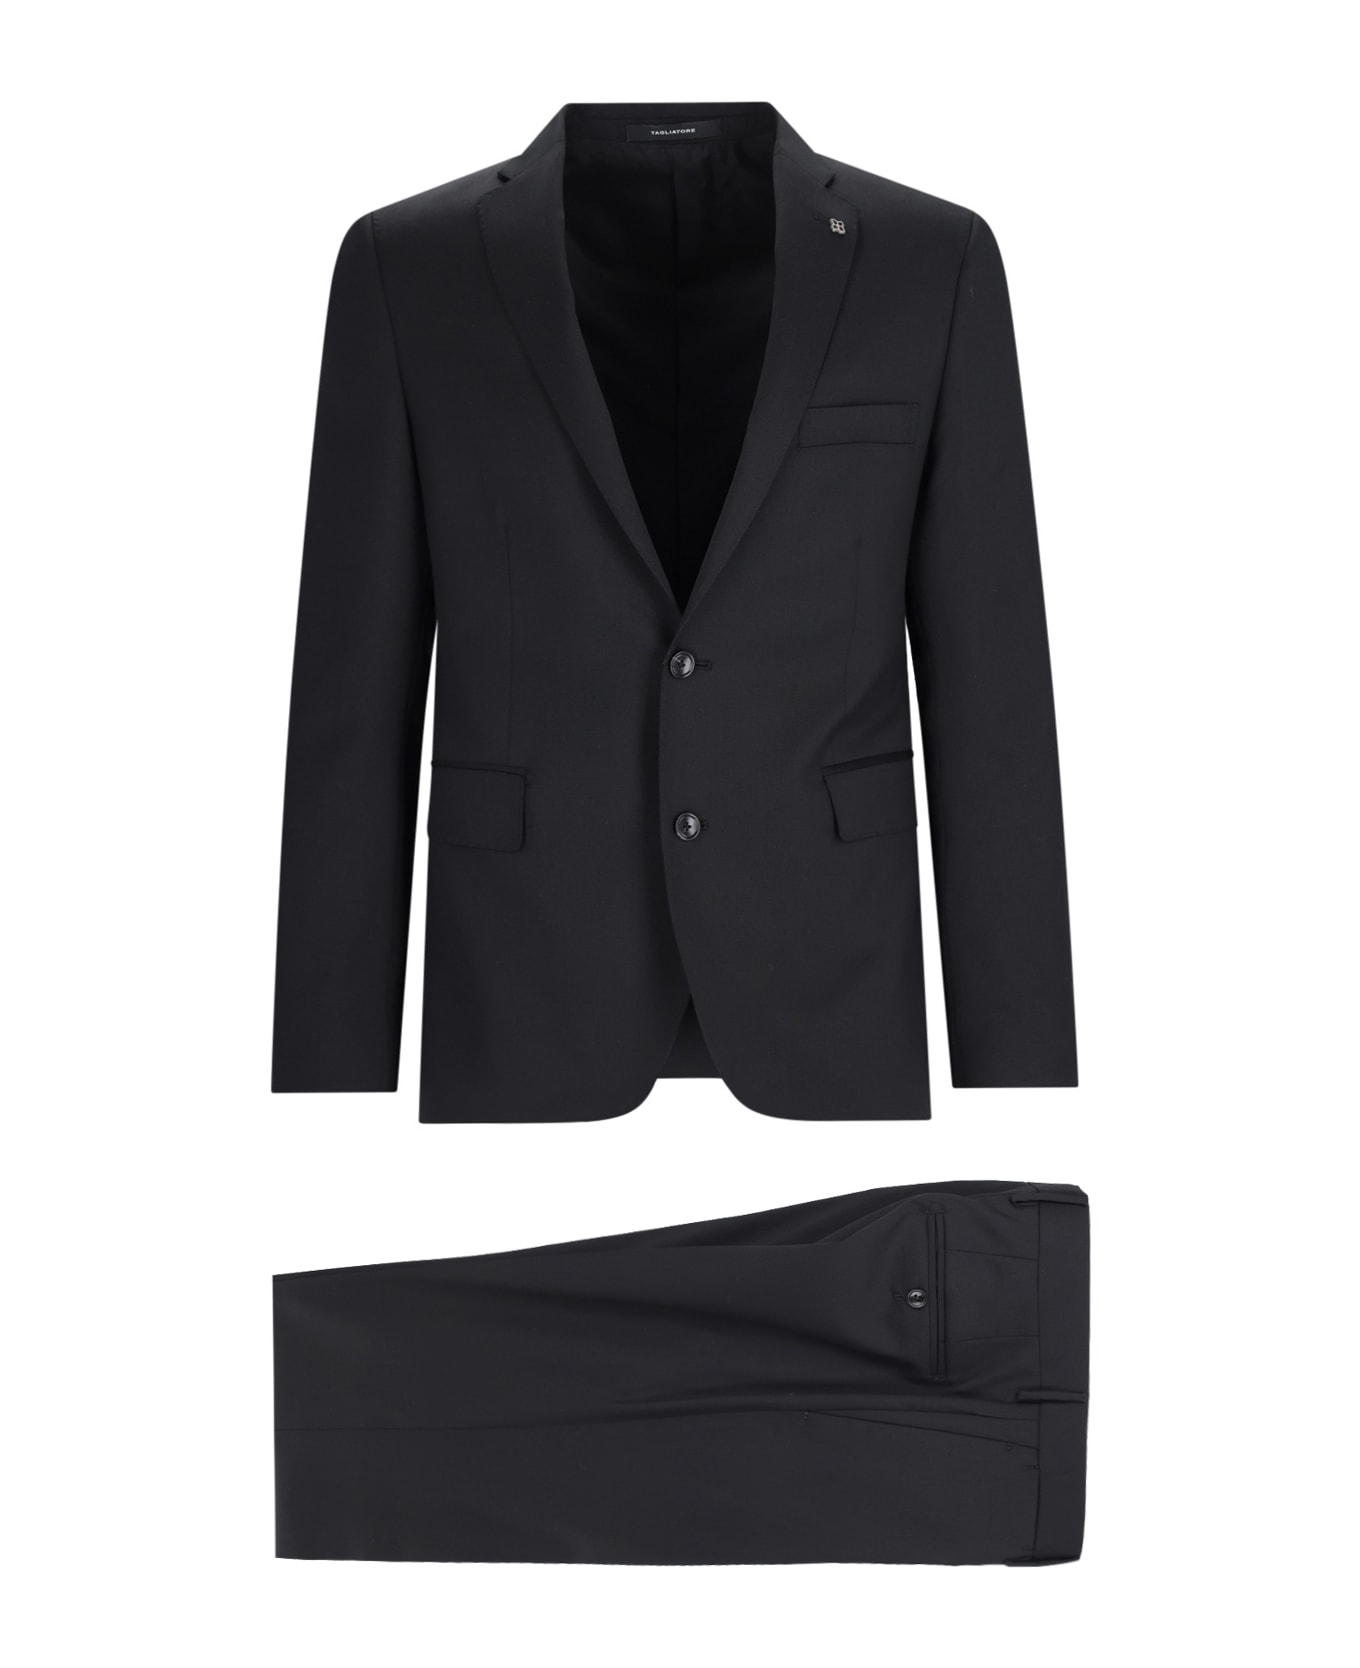 Tagliatore Single-breasted Suit - BLACK スーツ